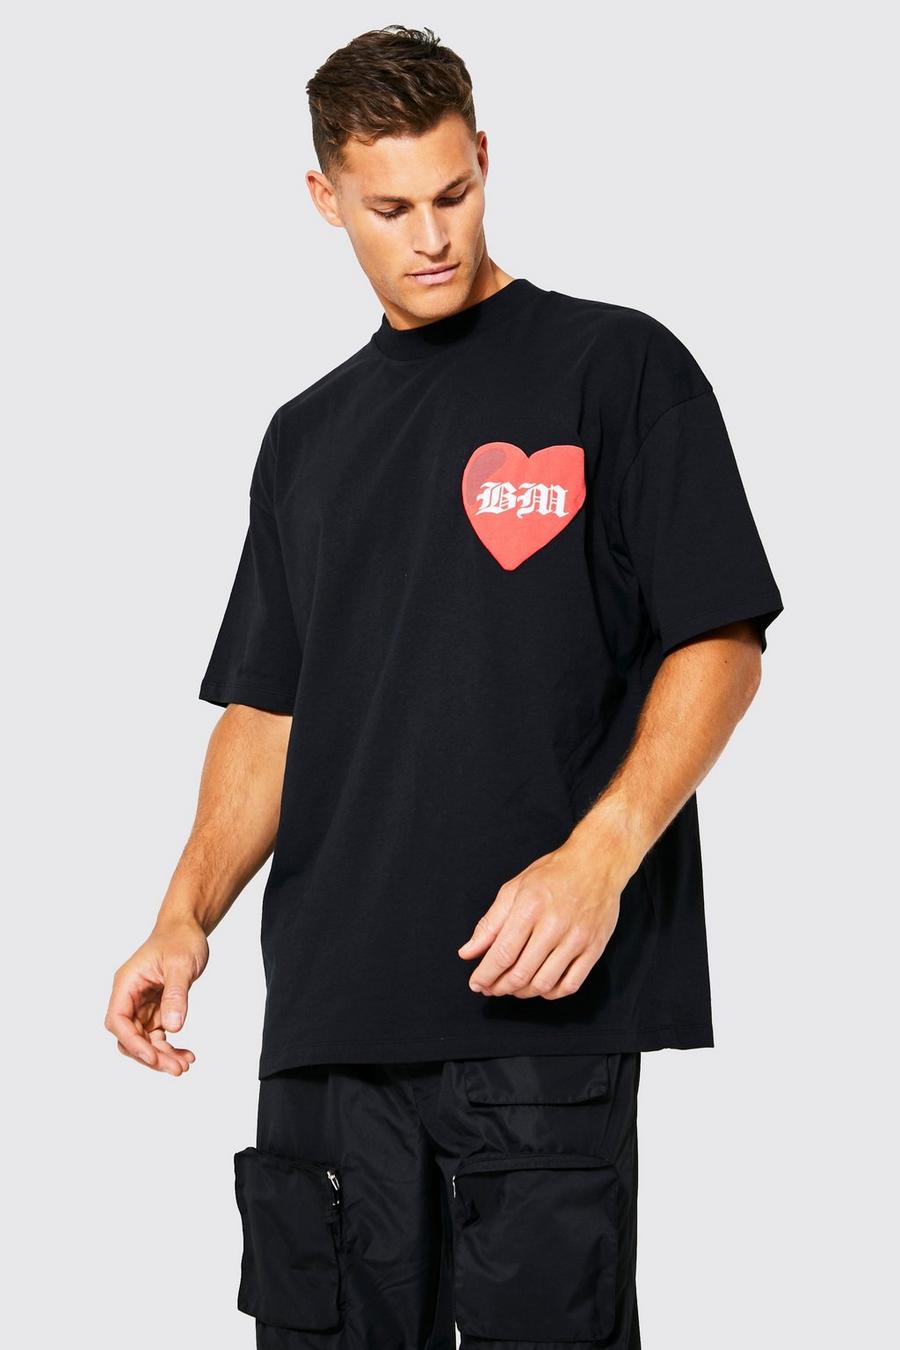 T-shirt Tall oversize con stampa BM a caratteri arrotondati e cuore, Black negro